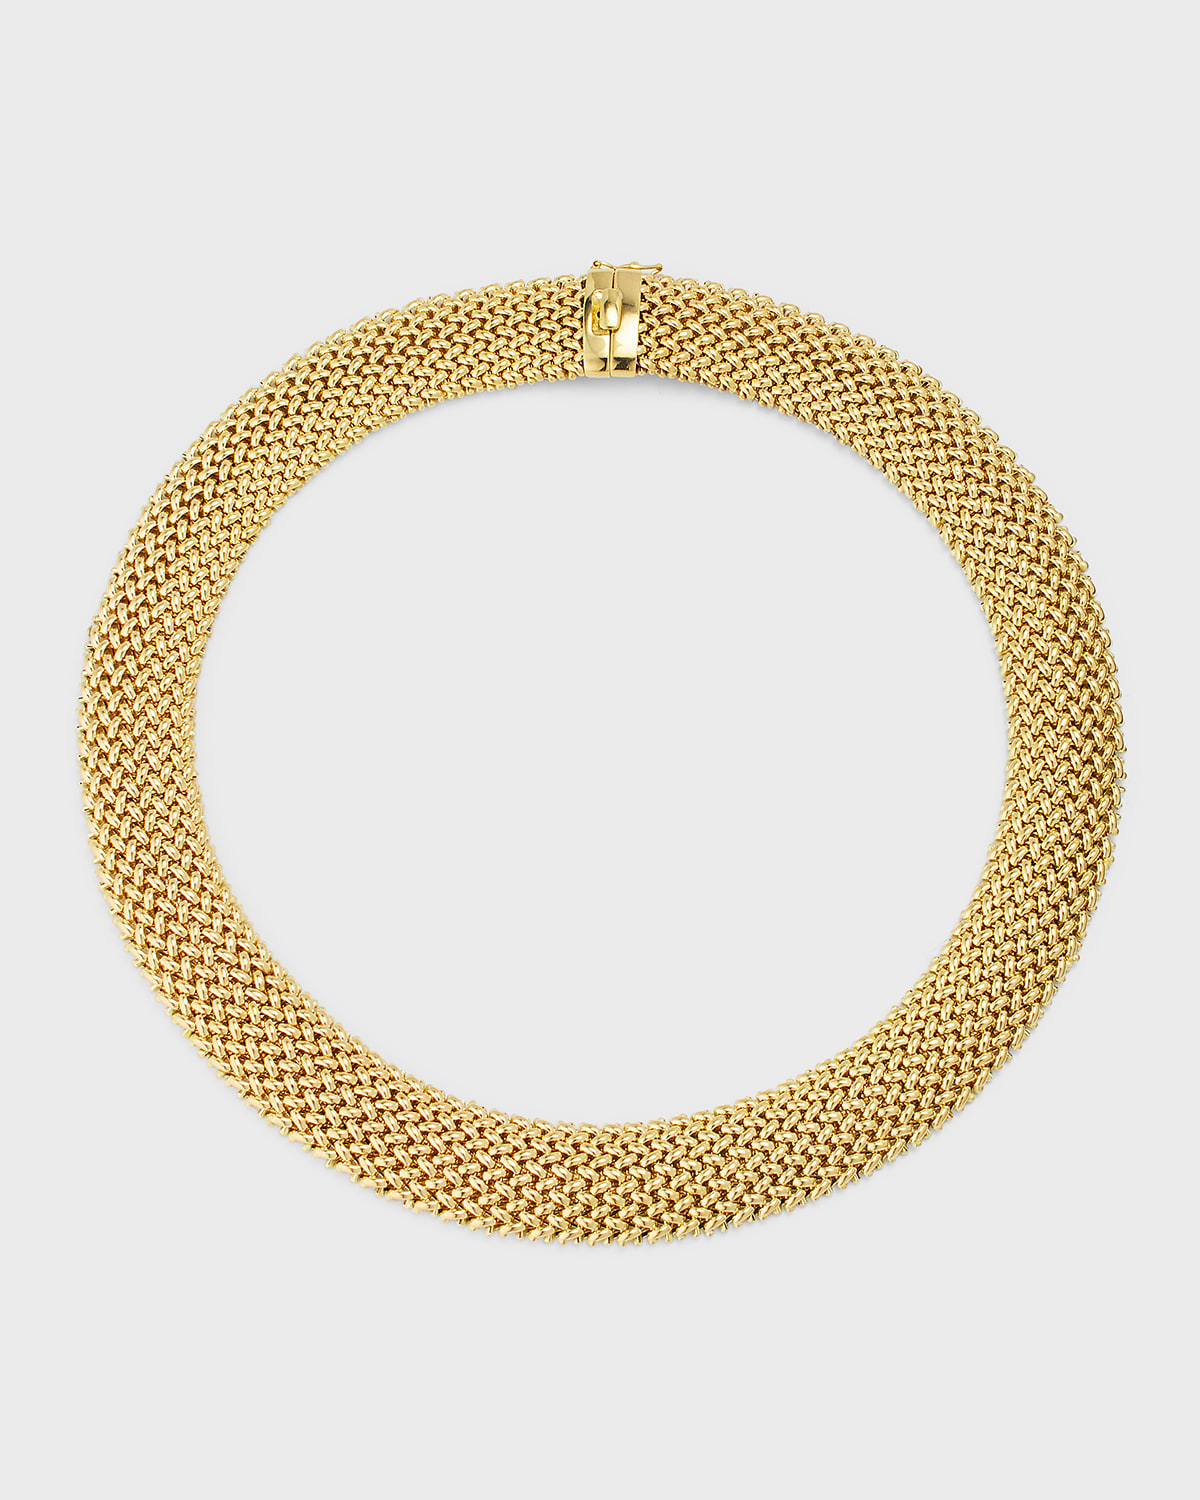 18K Yellow Gold Via Ornato Chicco Chain Necklace, 18mm